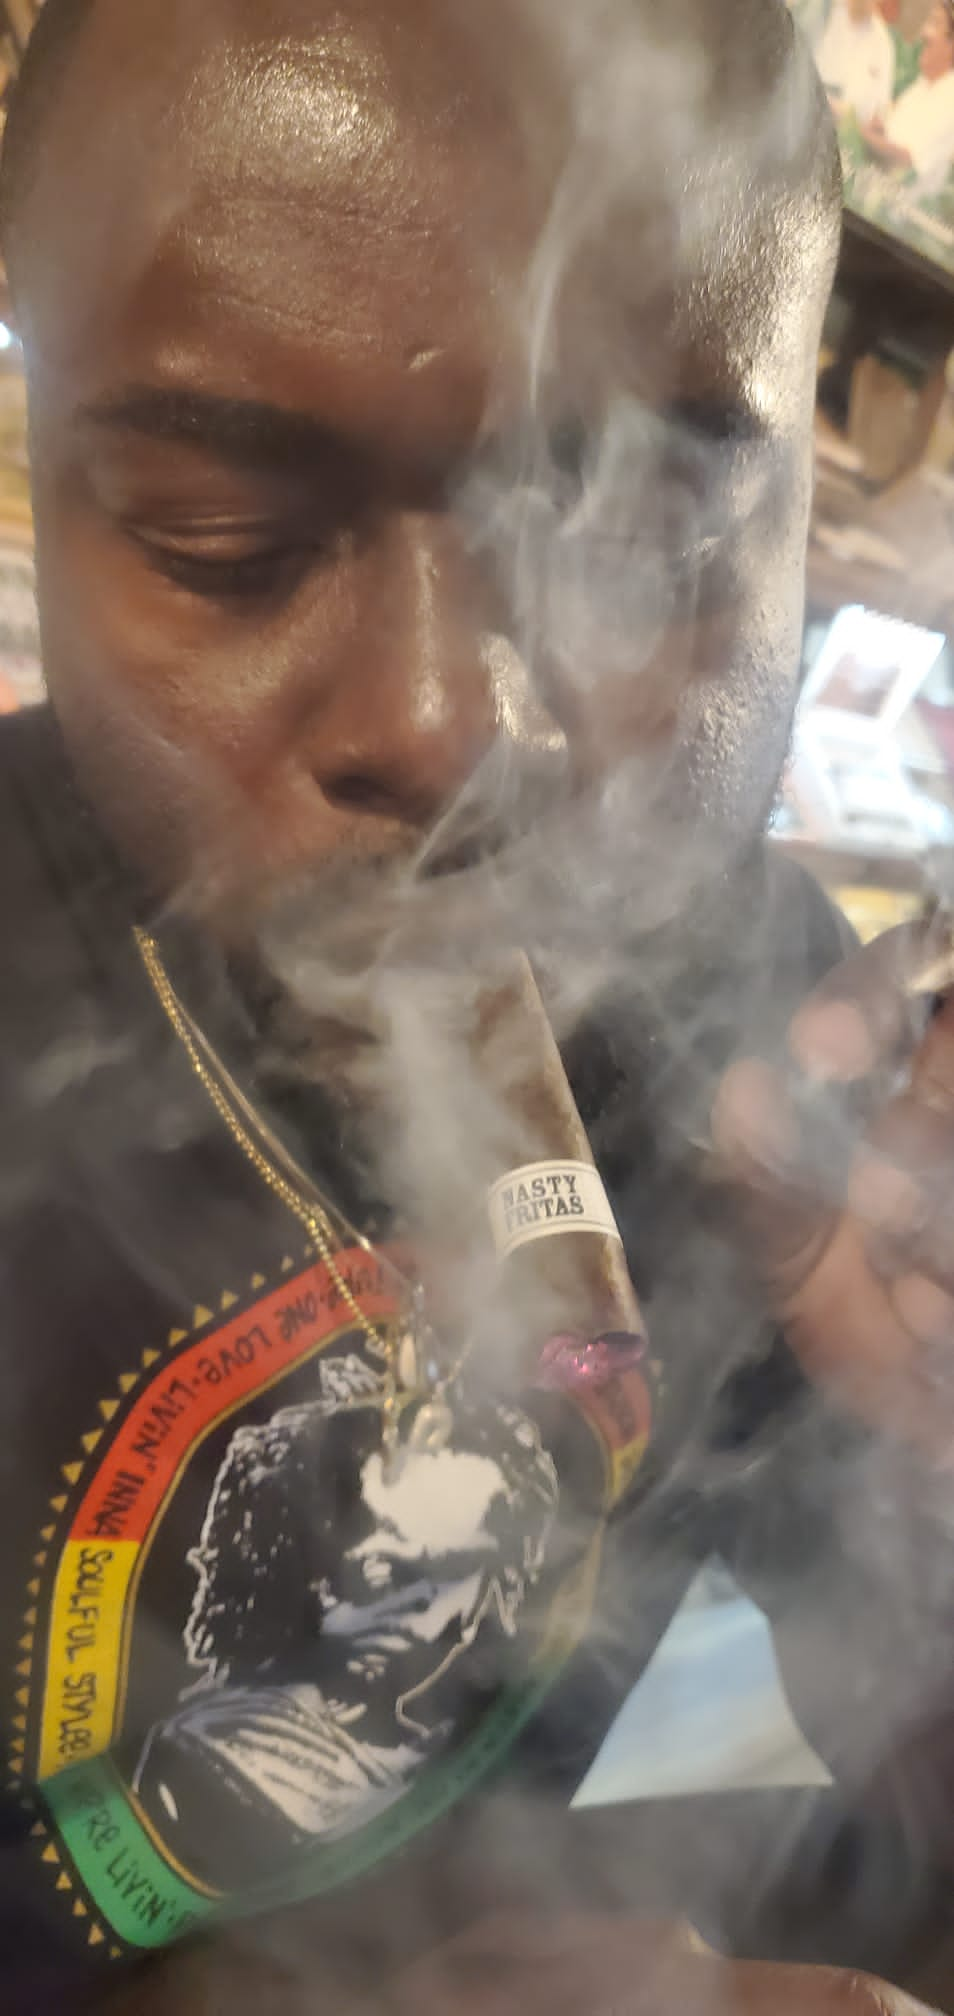 A man smoking a Liga Privada Unico Serie Nasty Fritas cigar